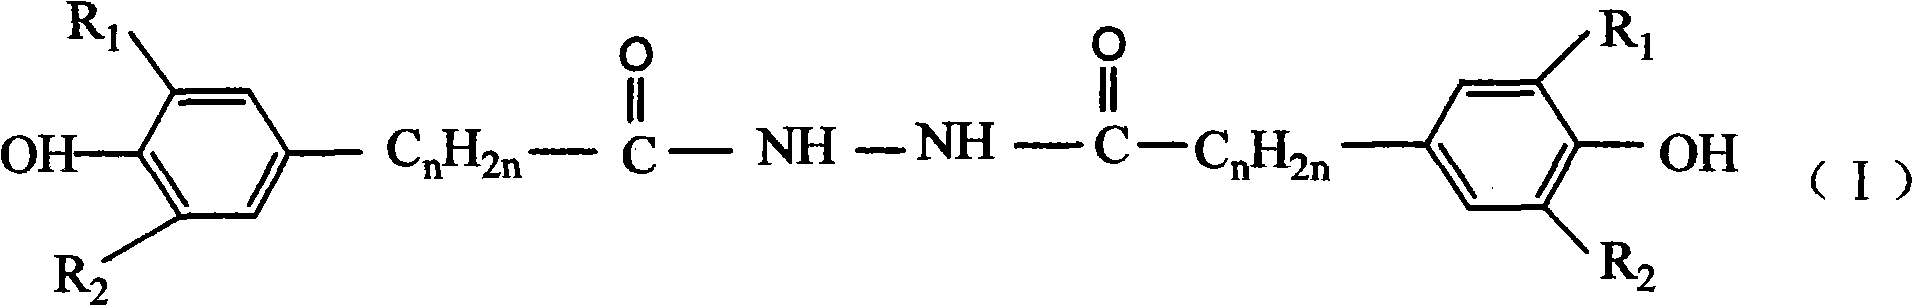 Catalytic preparation method for hindered phenol derivative antioxygen